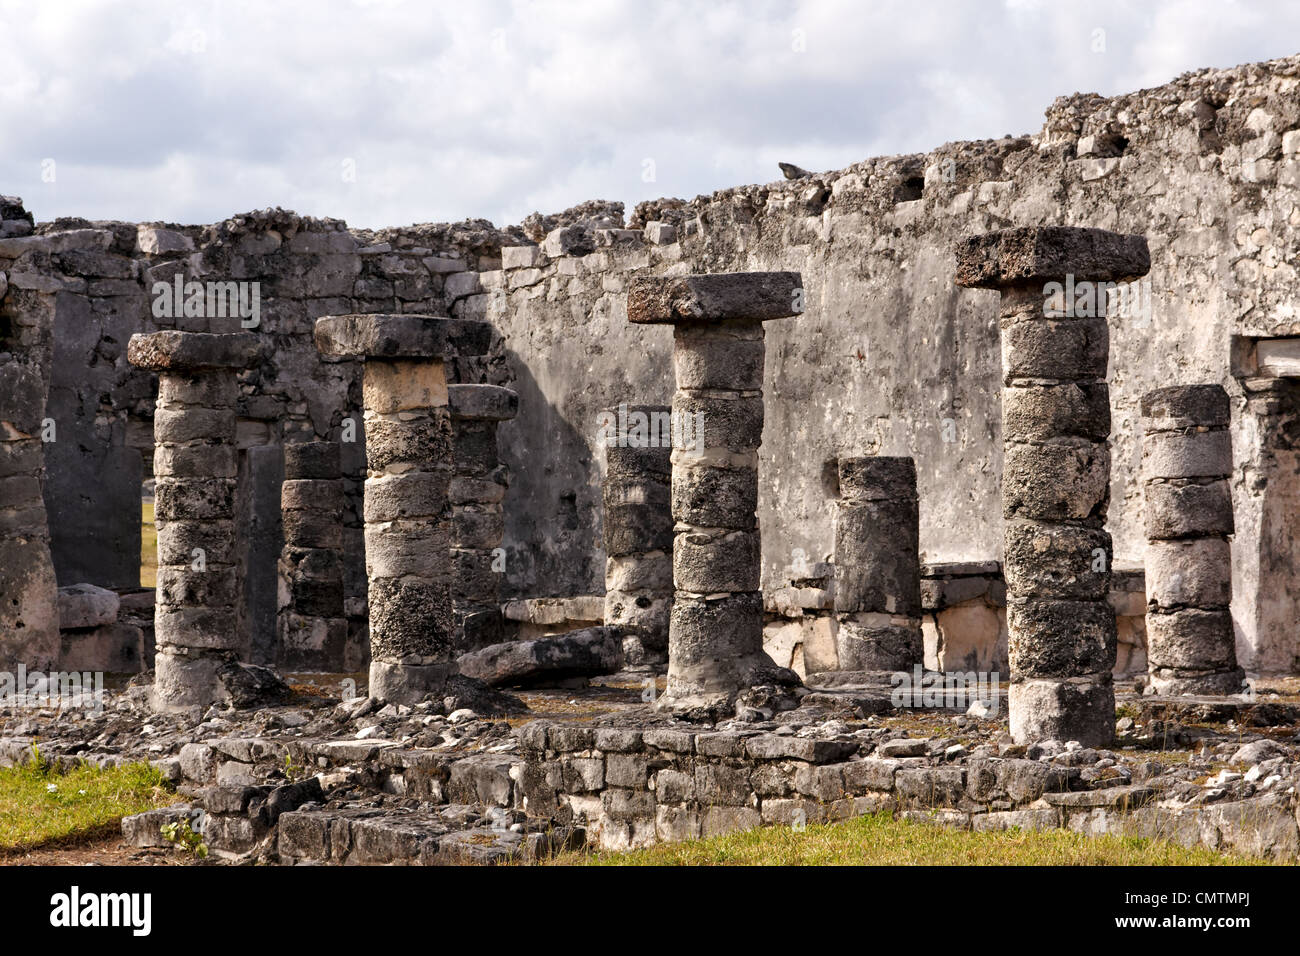 Détail de ruines Maya avec des colonnes sur le site archéologique de Tulum, Quintana Roo, Mexique. Banque D'Images